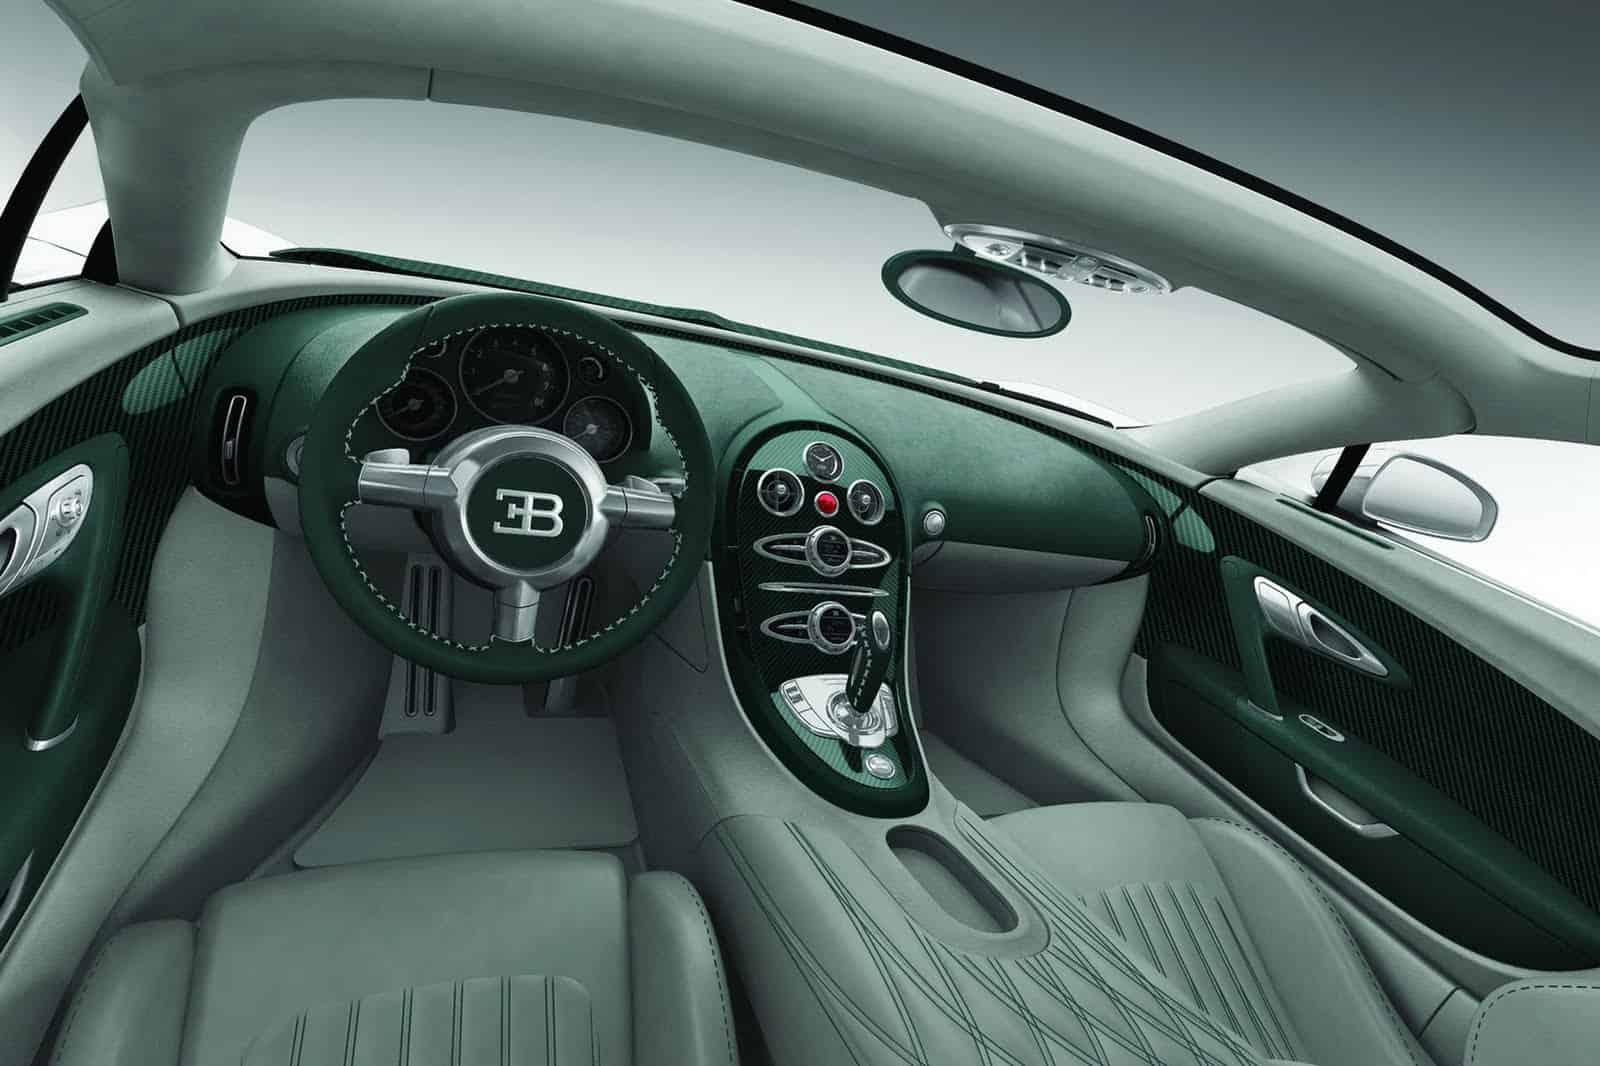 Bugatti Grand Sport green with green interior